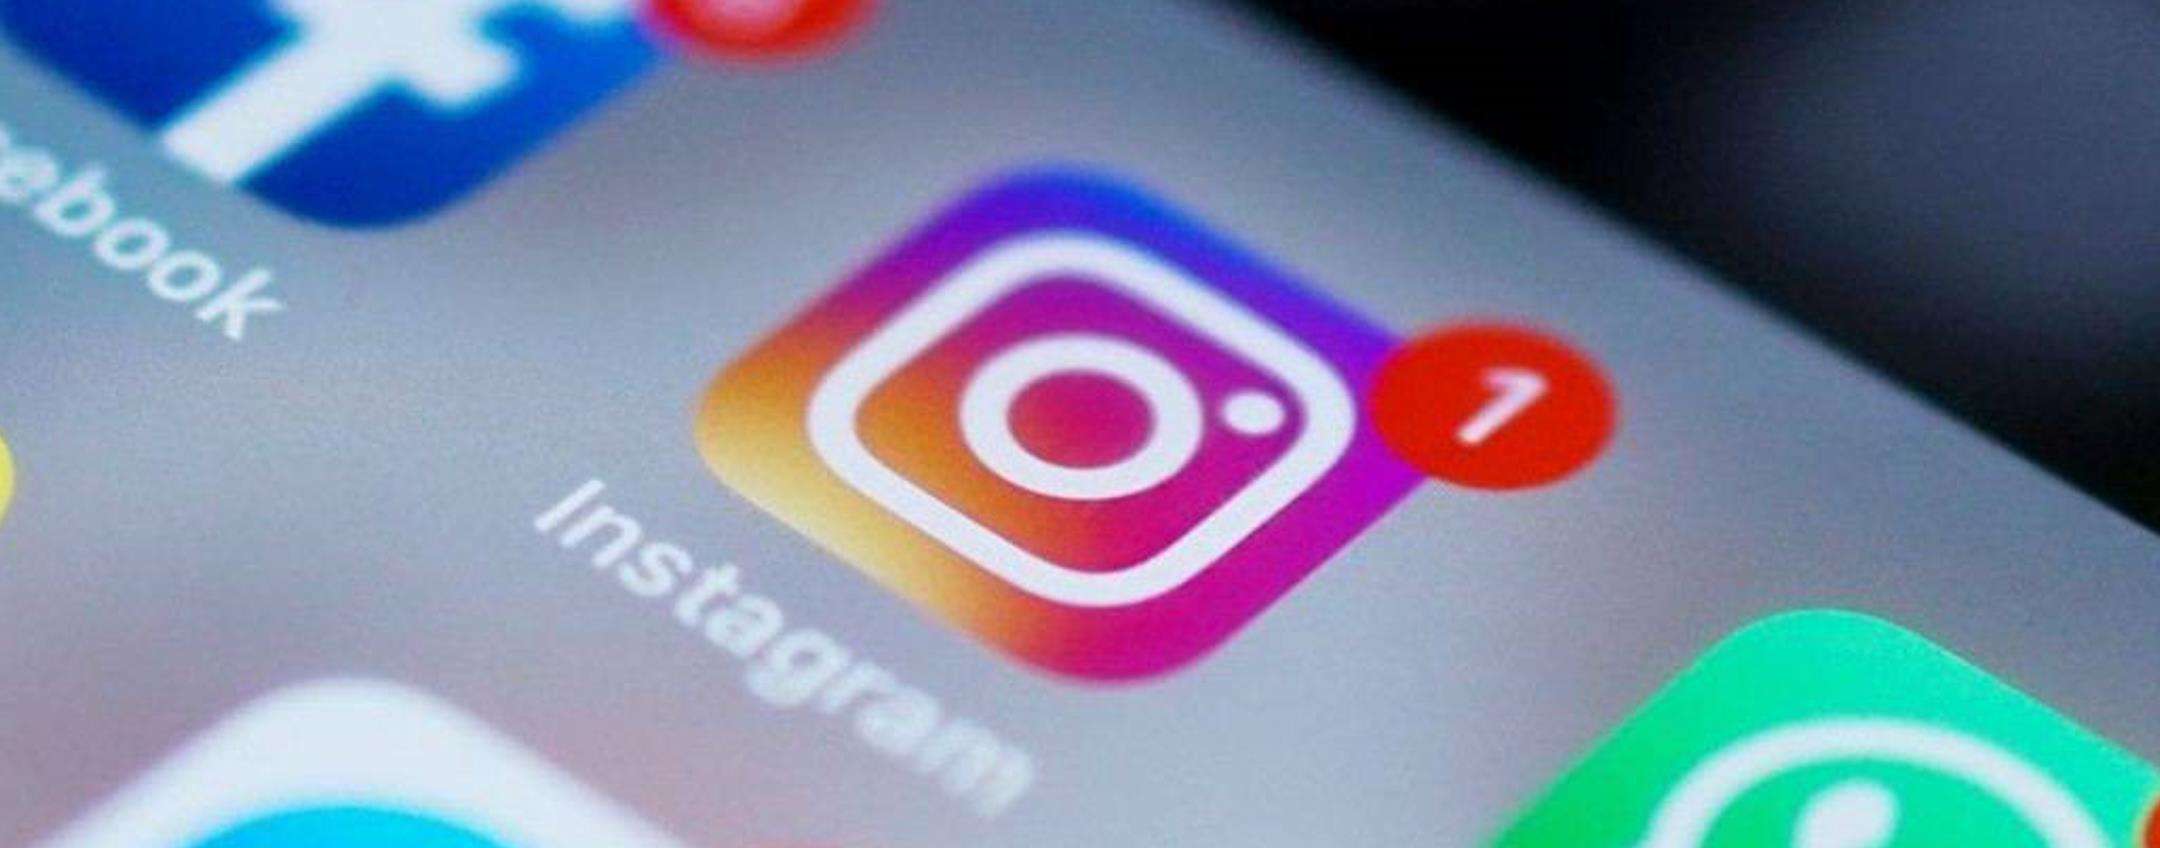 Instagram come Twitch: arrivano i Moderatori nelle live